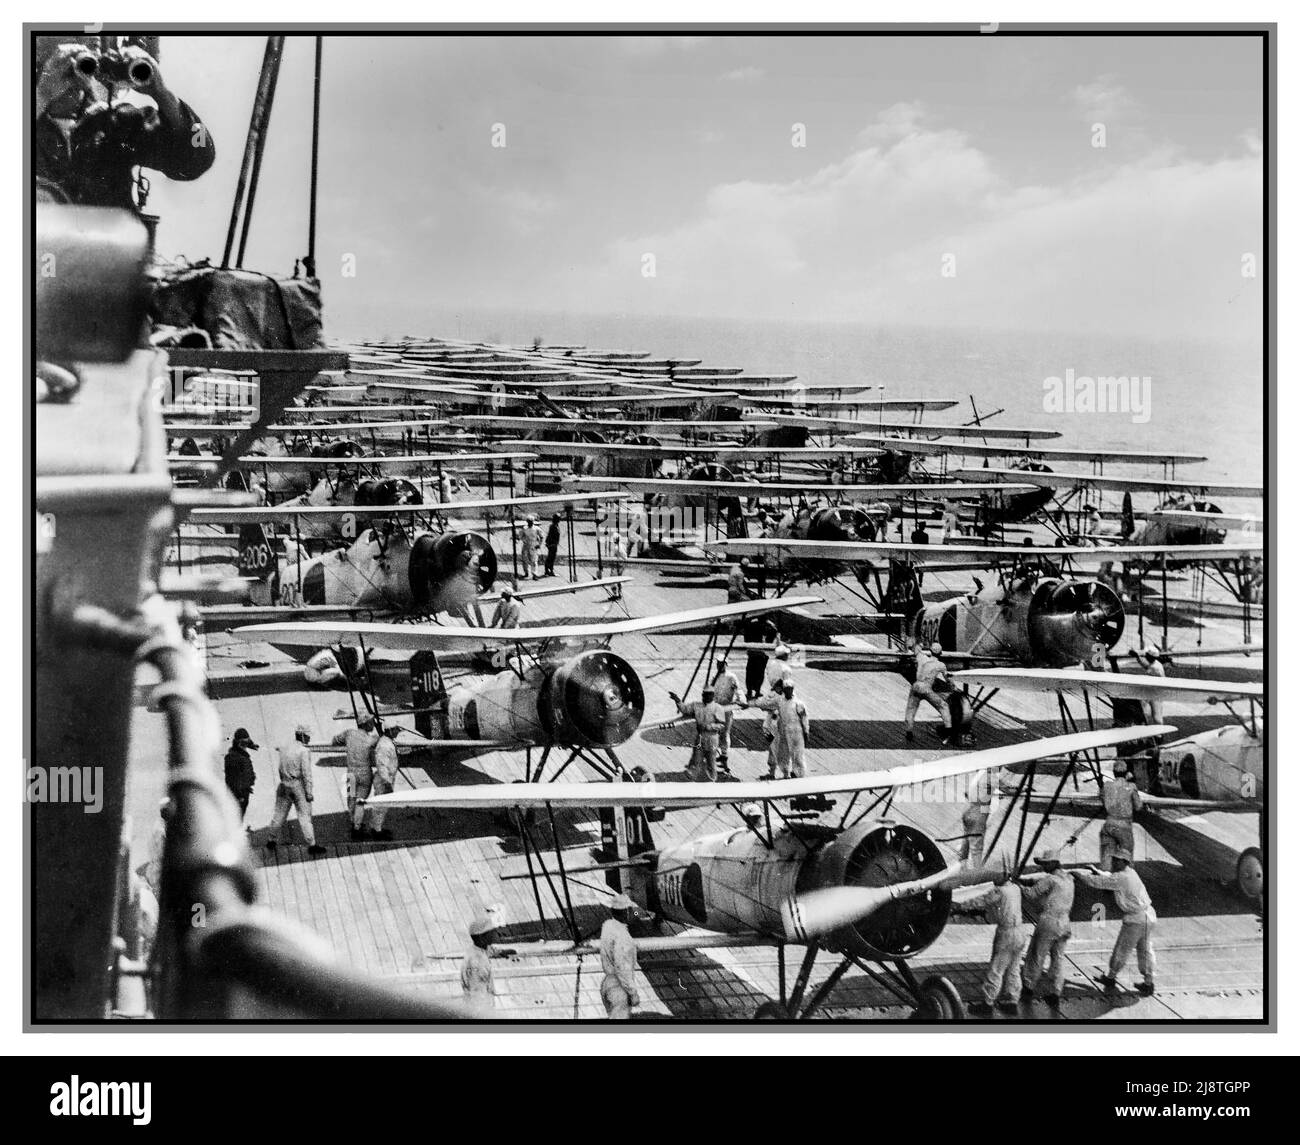 PROVE DI PEARL HARBOR la portaerei Imperial Japanese Navy Aircraft Carrier Kaga effettua operazioni aeree nel 1937. Sul ponte sono presenti Mitsubishi B2M tipo 89, Nakajima A2N tipo 90 e Aichi D1A1 tipo 94. Foto Stock